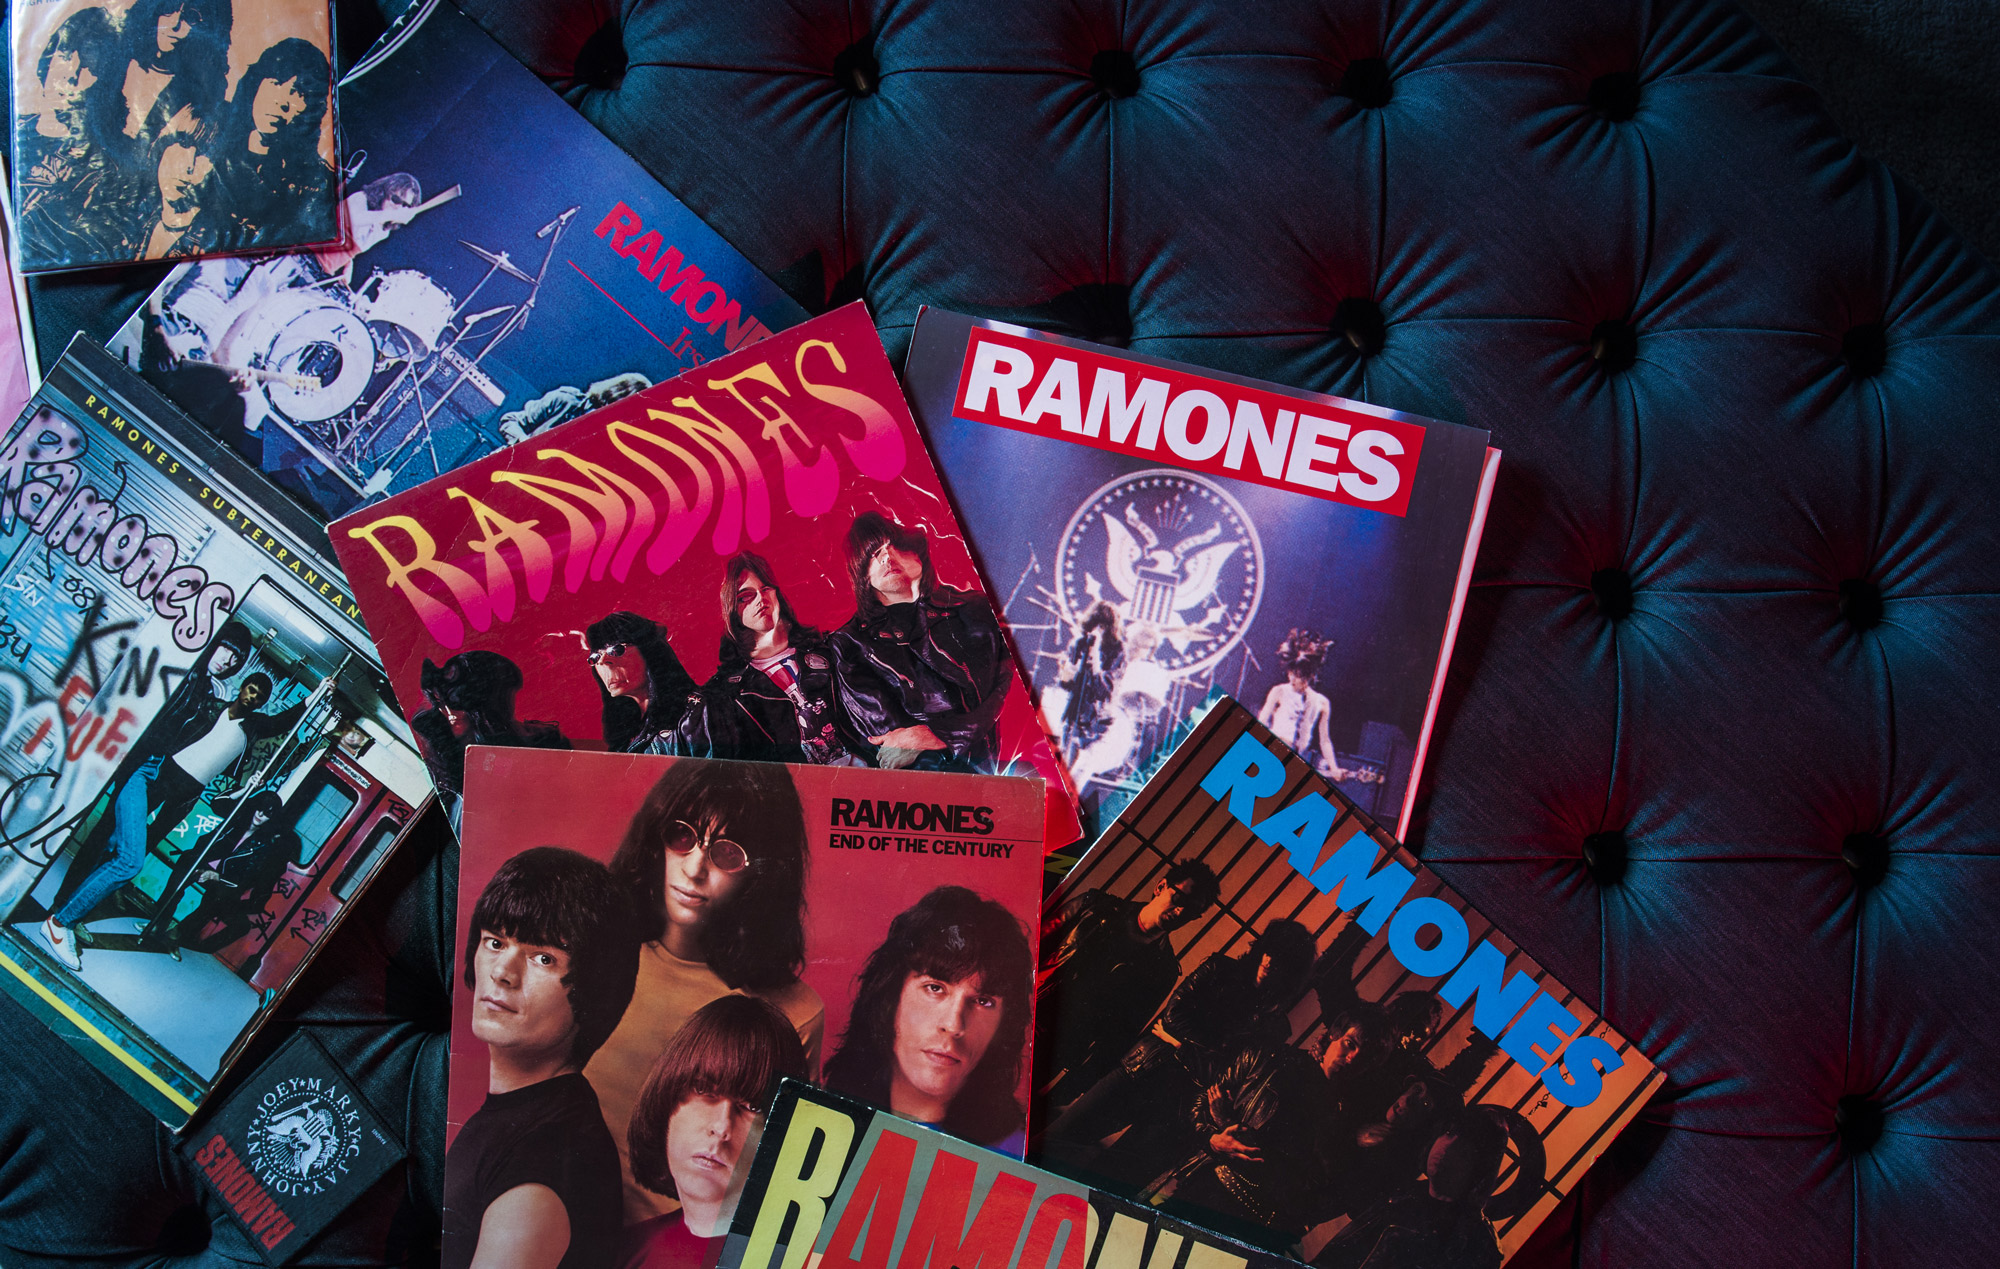 bertolive Ramones vinyl record collection